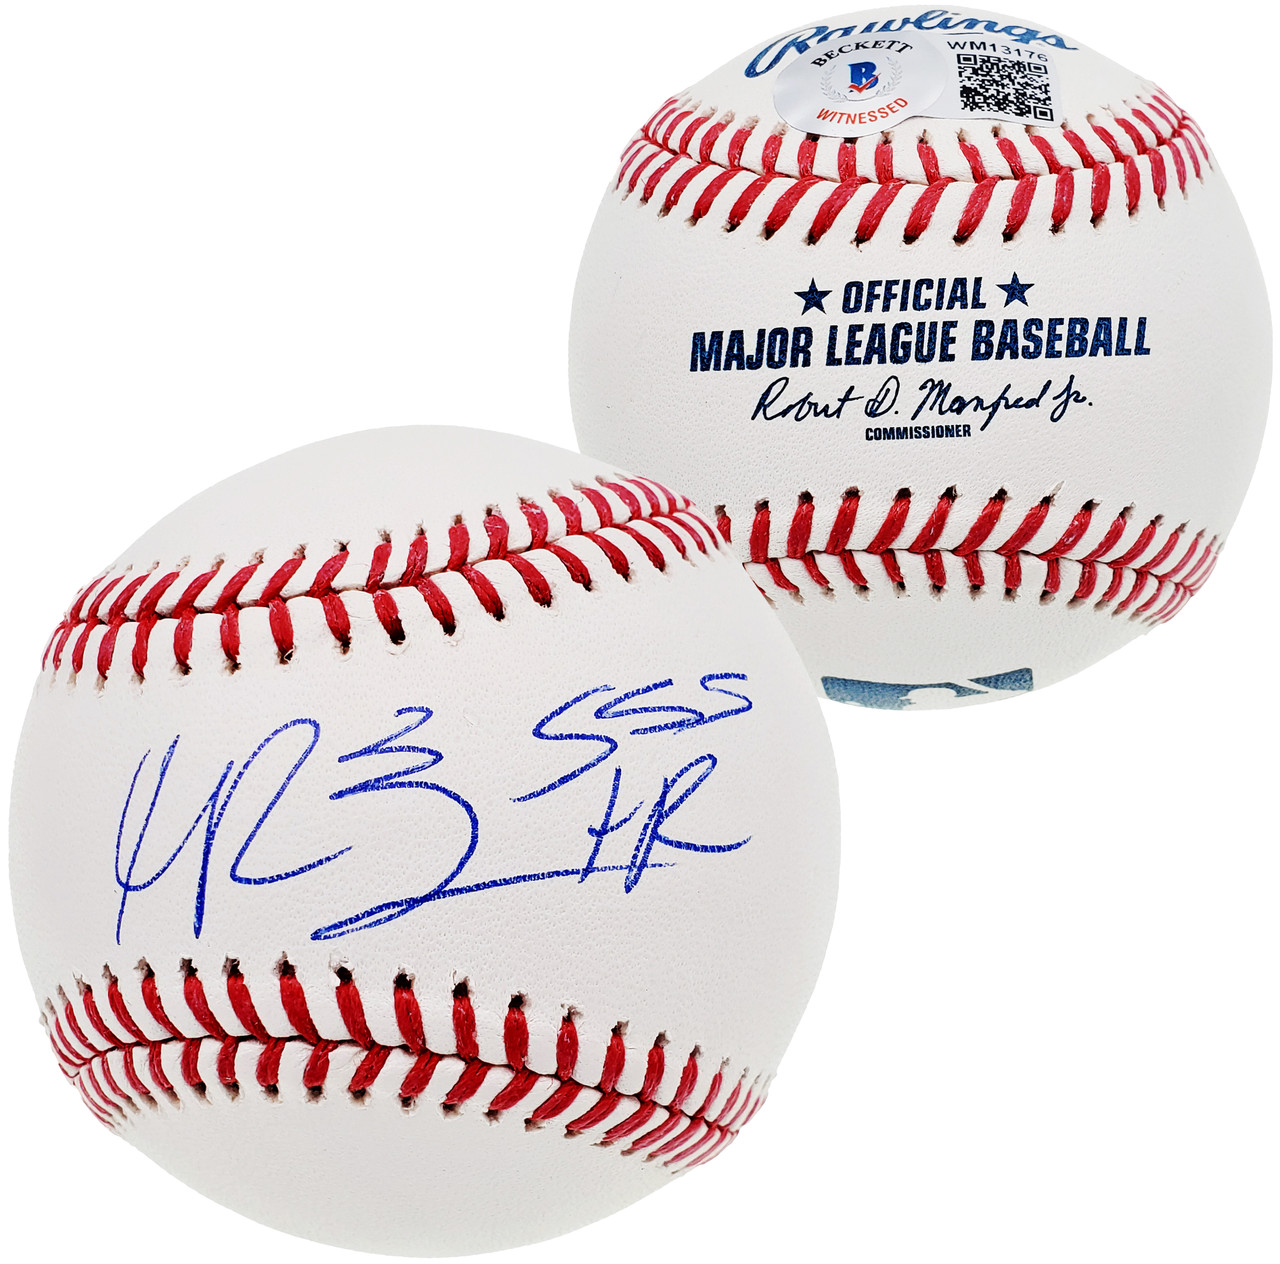 Manny Ramirez Autograph Baseball